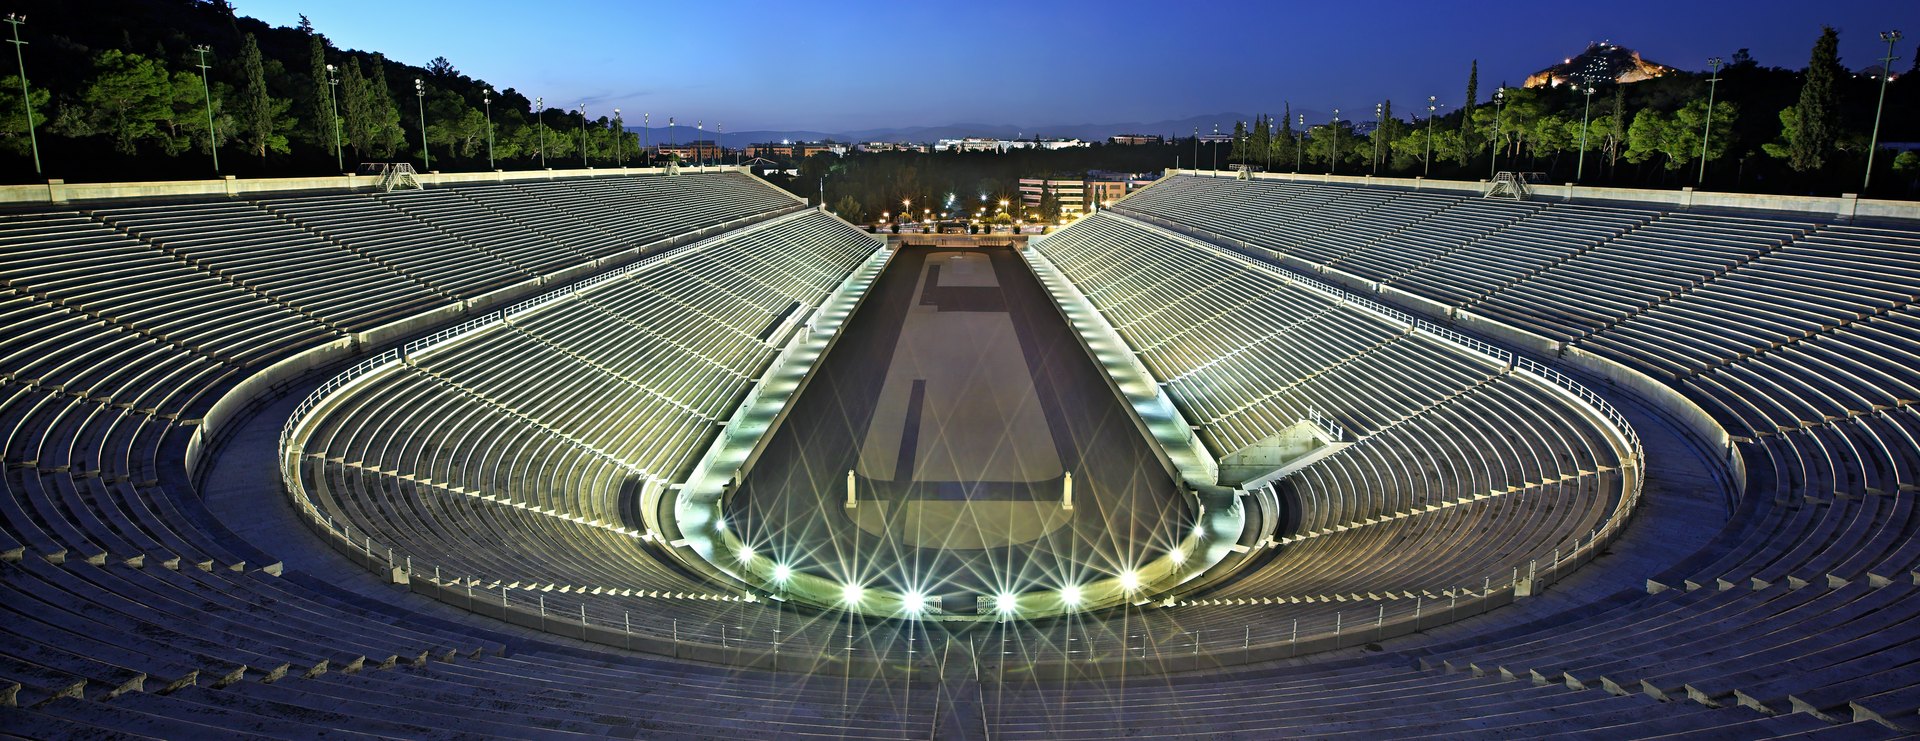 Panathenaic Stadium Image 1